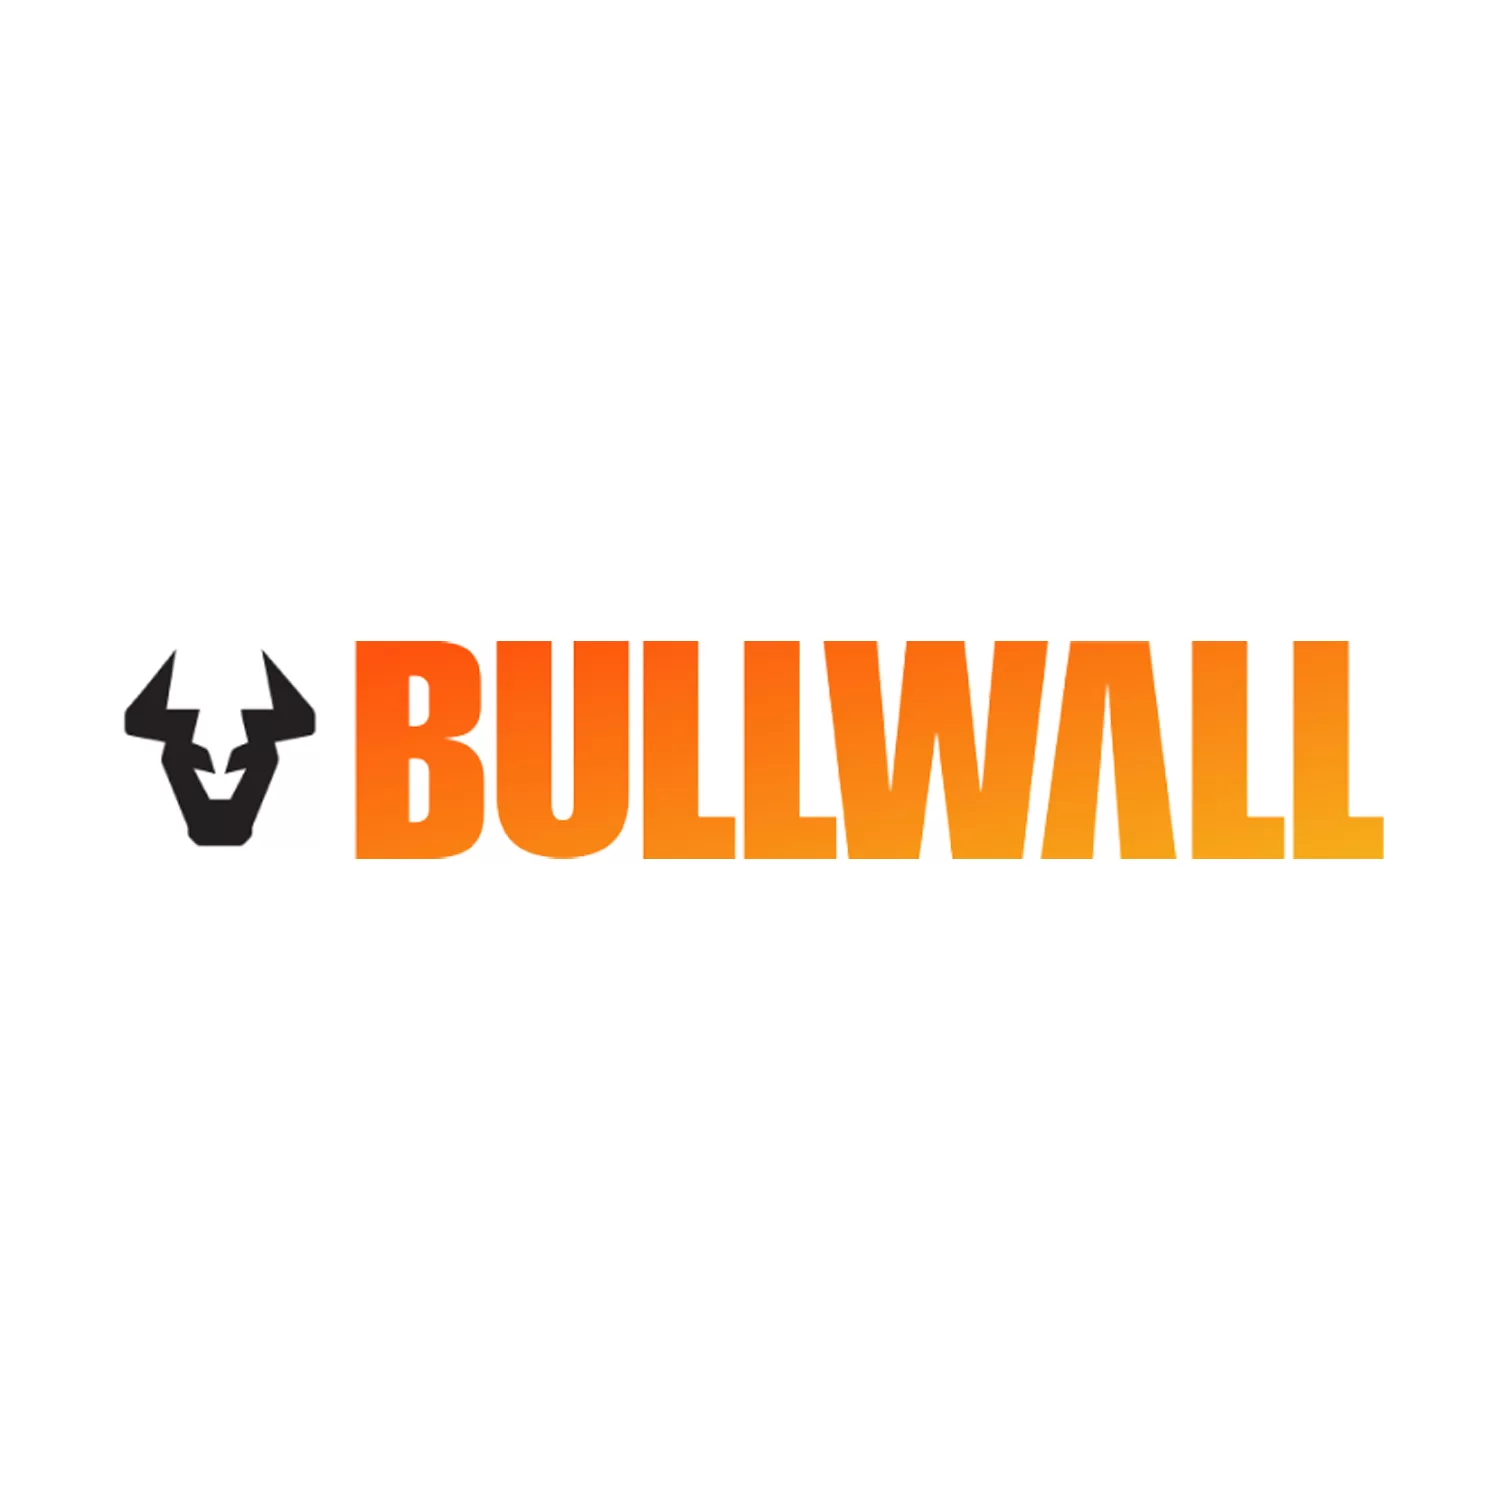 bullwall